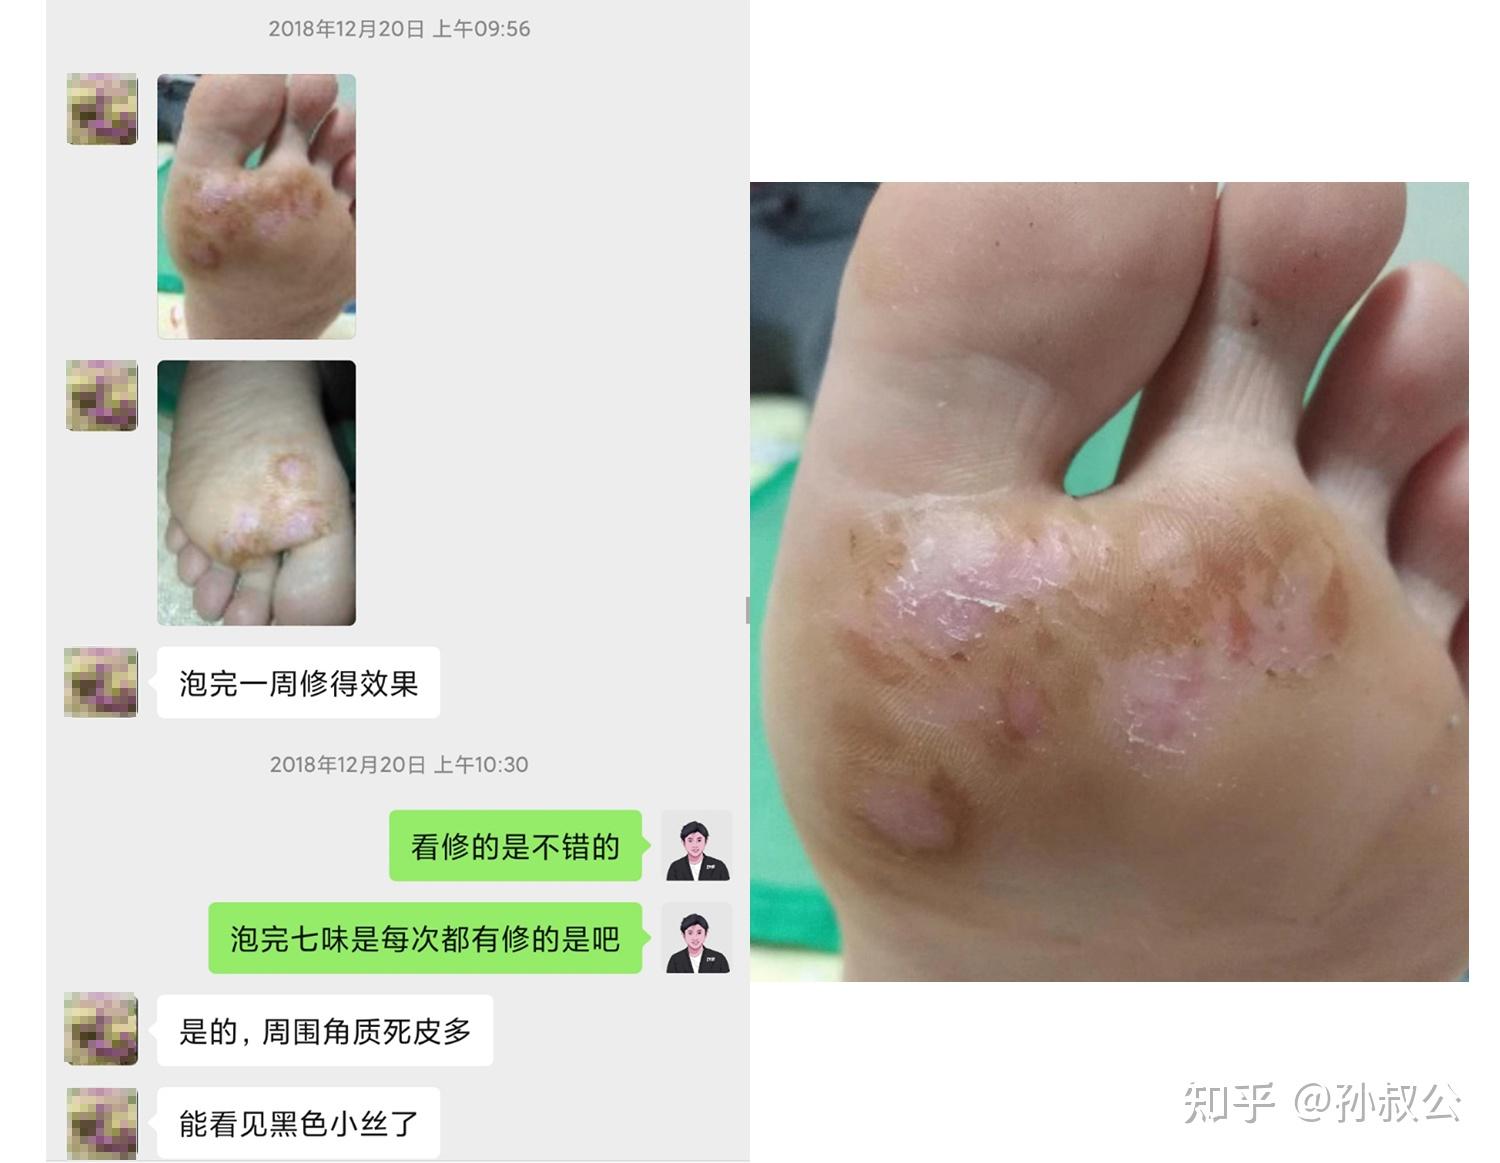 老查」首次咨询:感染4个月,被刺扎后处理不当感染了手疣,期间用指甲剪